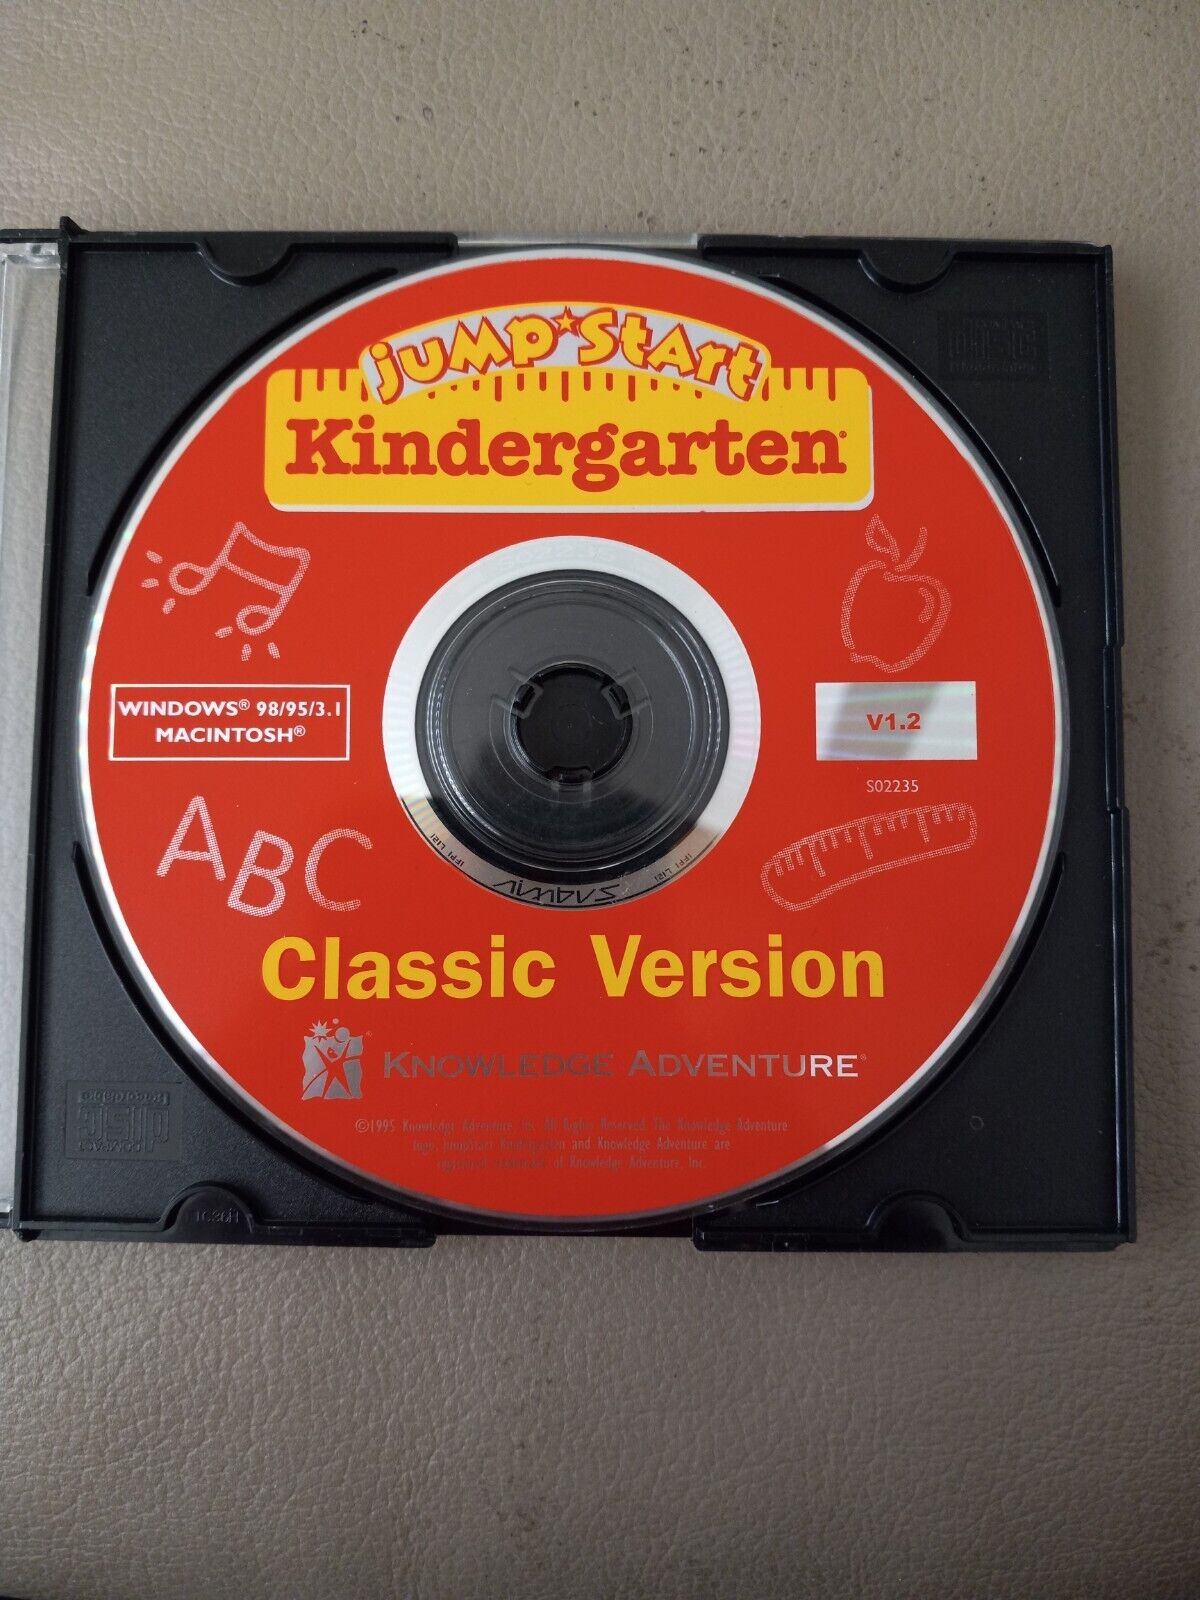 CHILDREN'S LEARNING SOFTWARE - Jump Start Kindergarten Classic Version V1.2